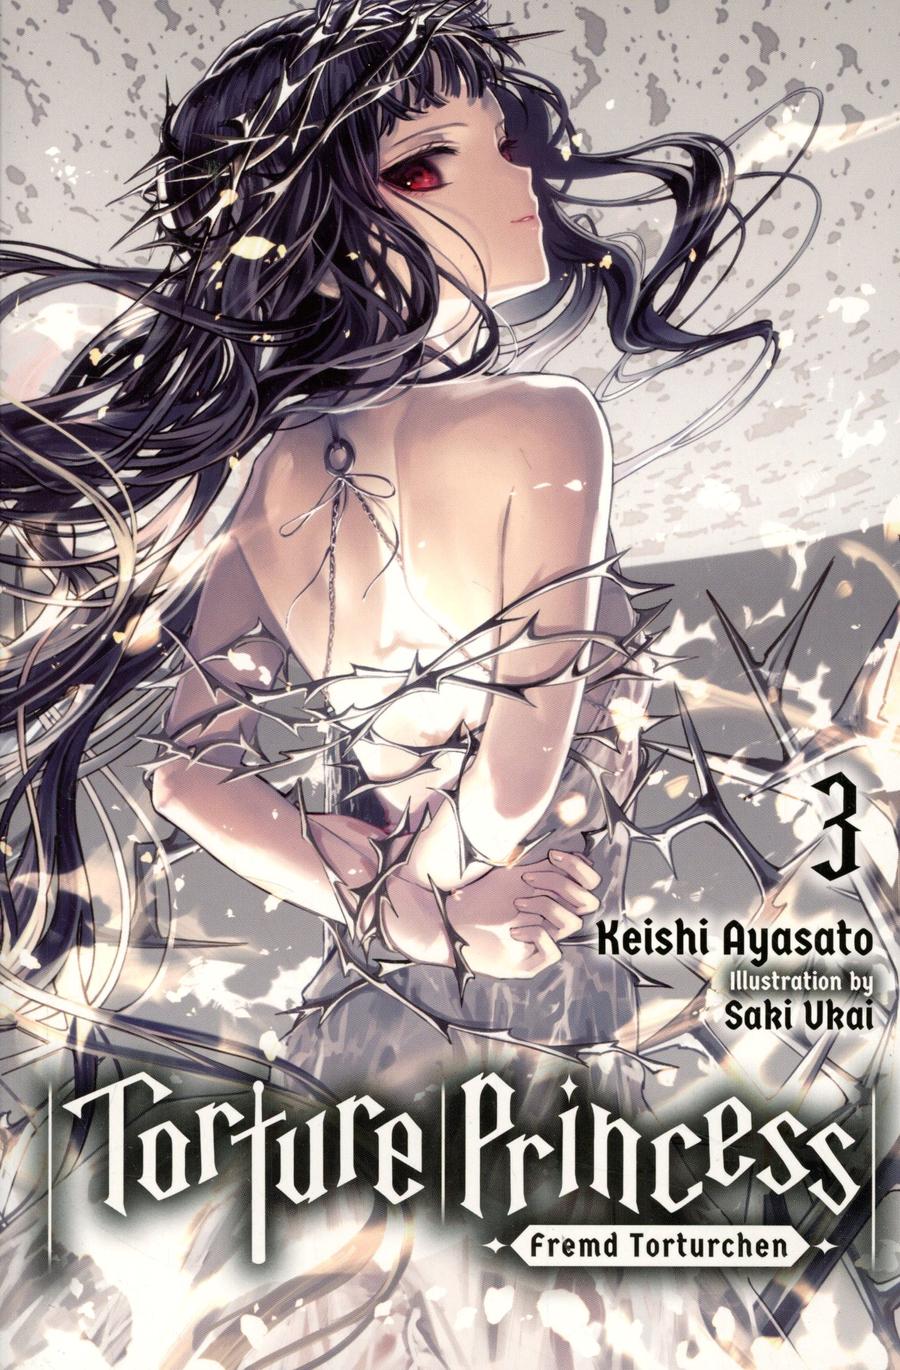 Torture Princess Fremd Torturchen Light Novel Vol 3